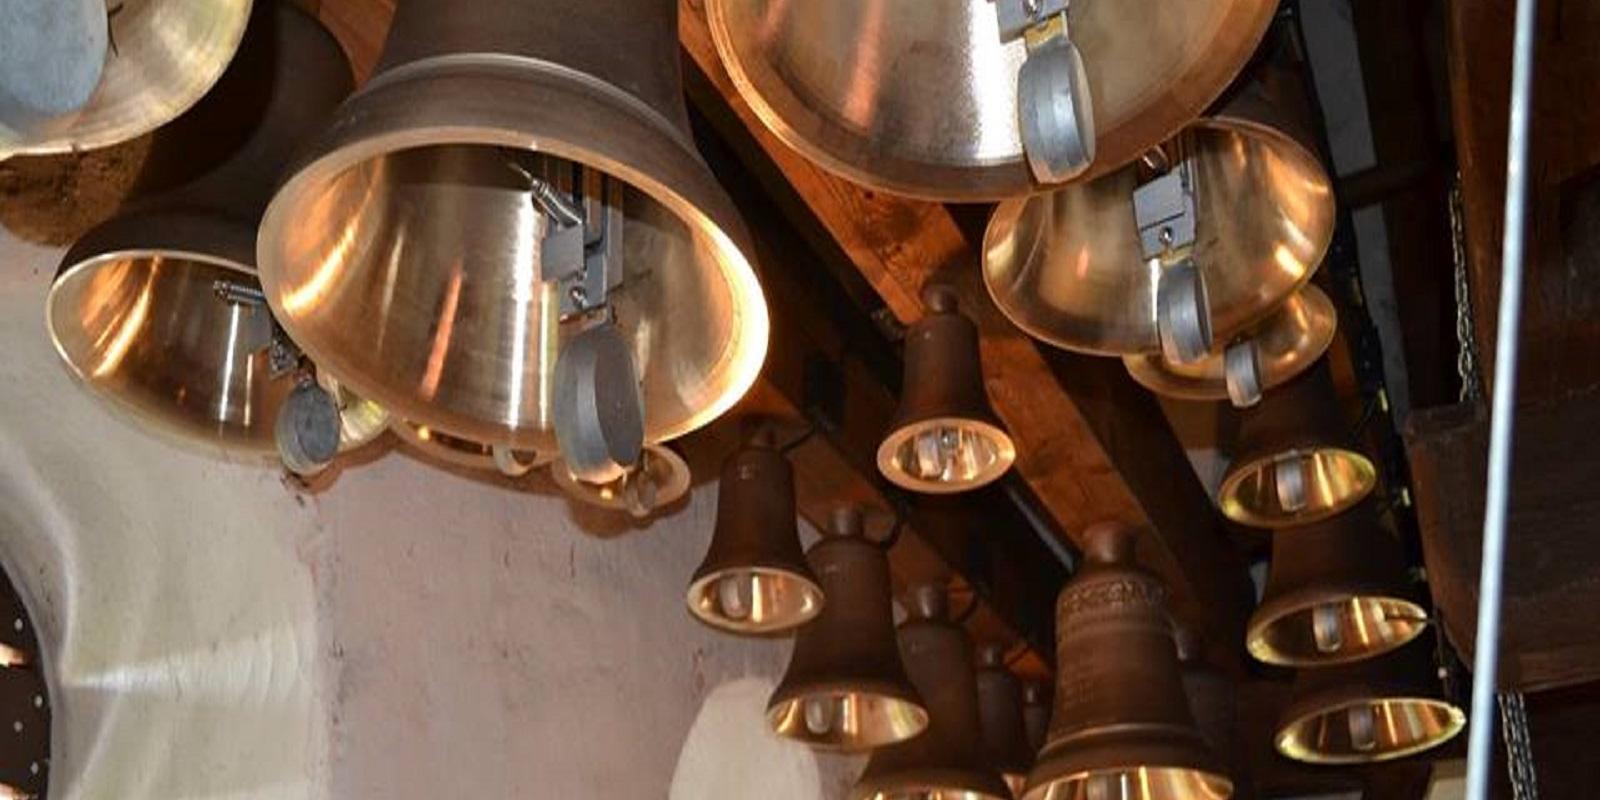 Das Glockenspiel der Johanniskirche in Viljandi